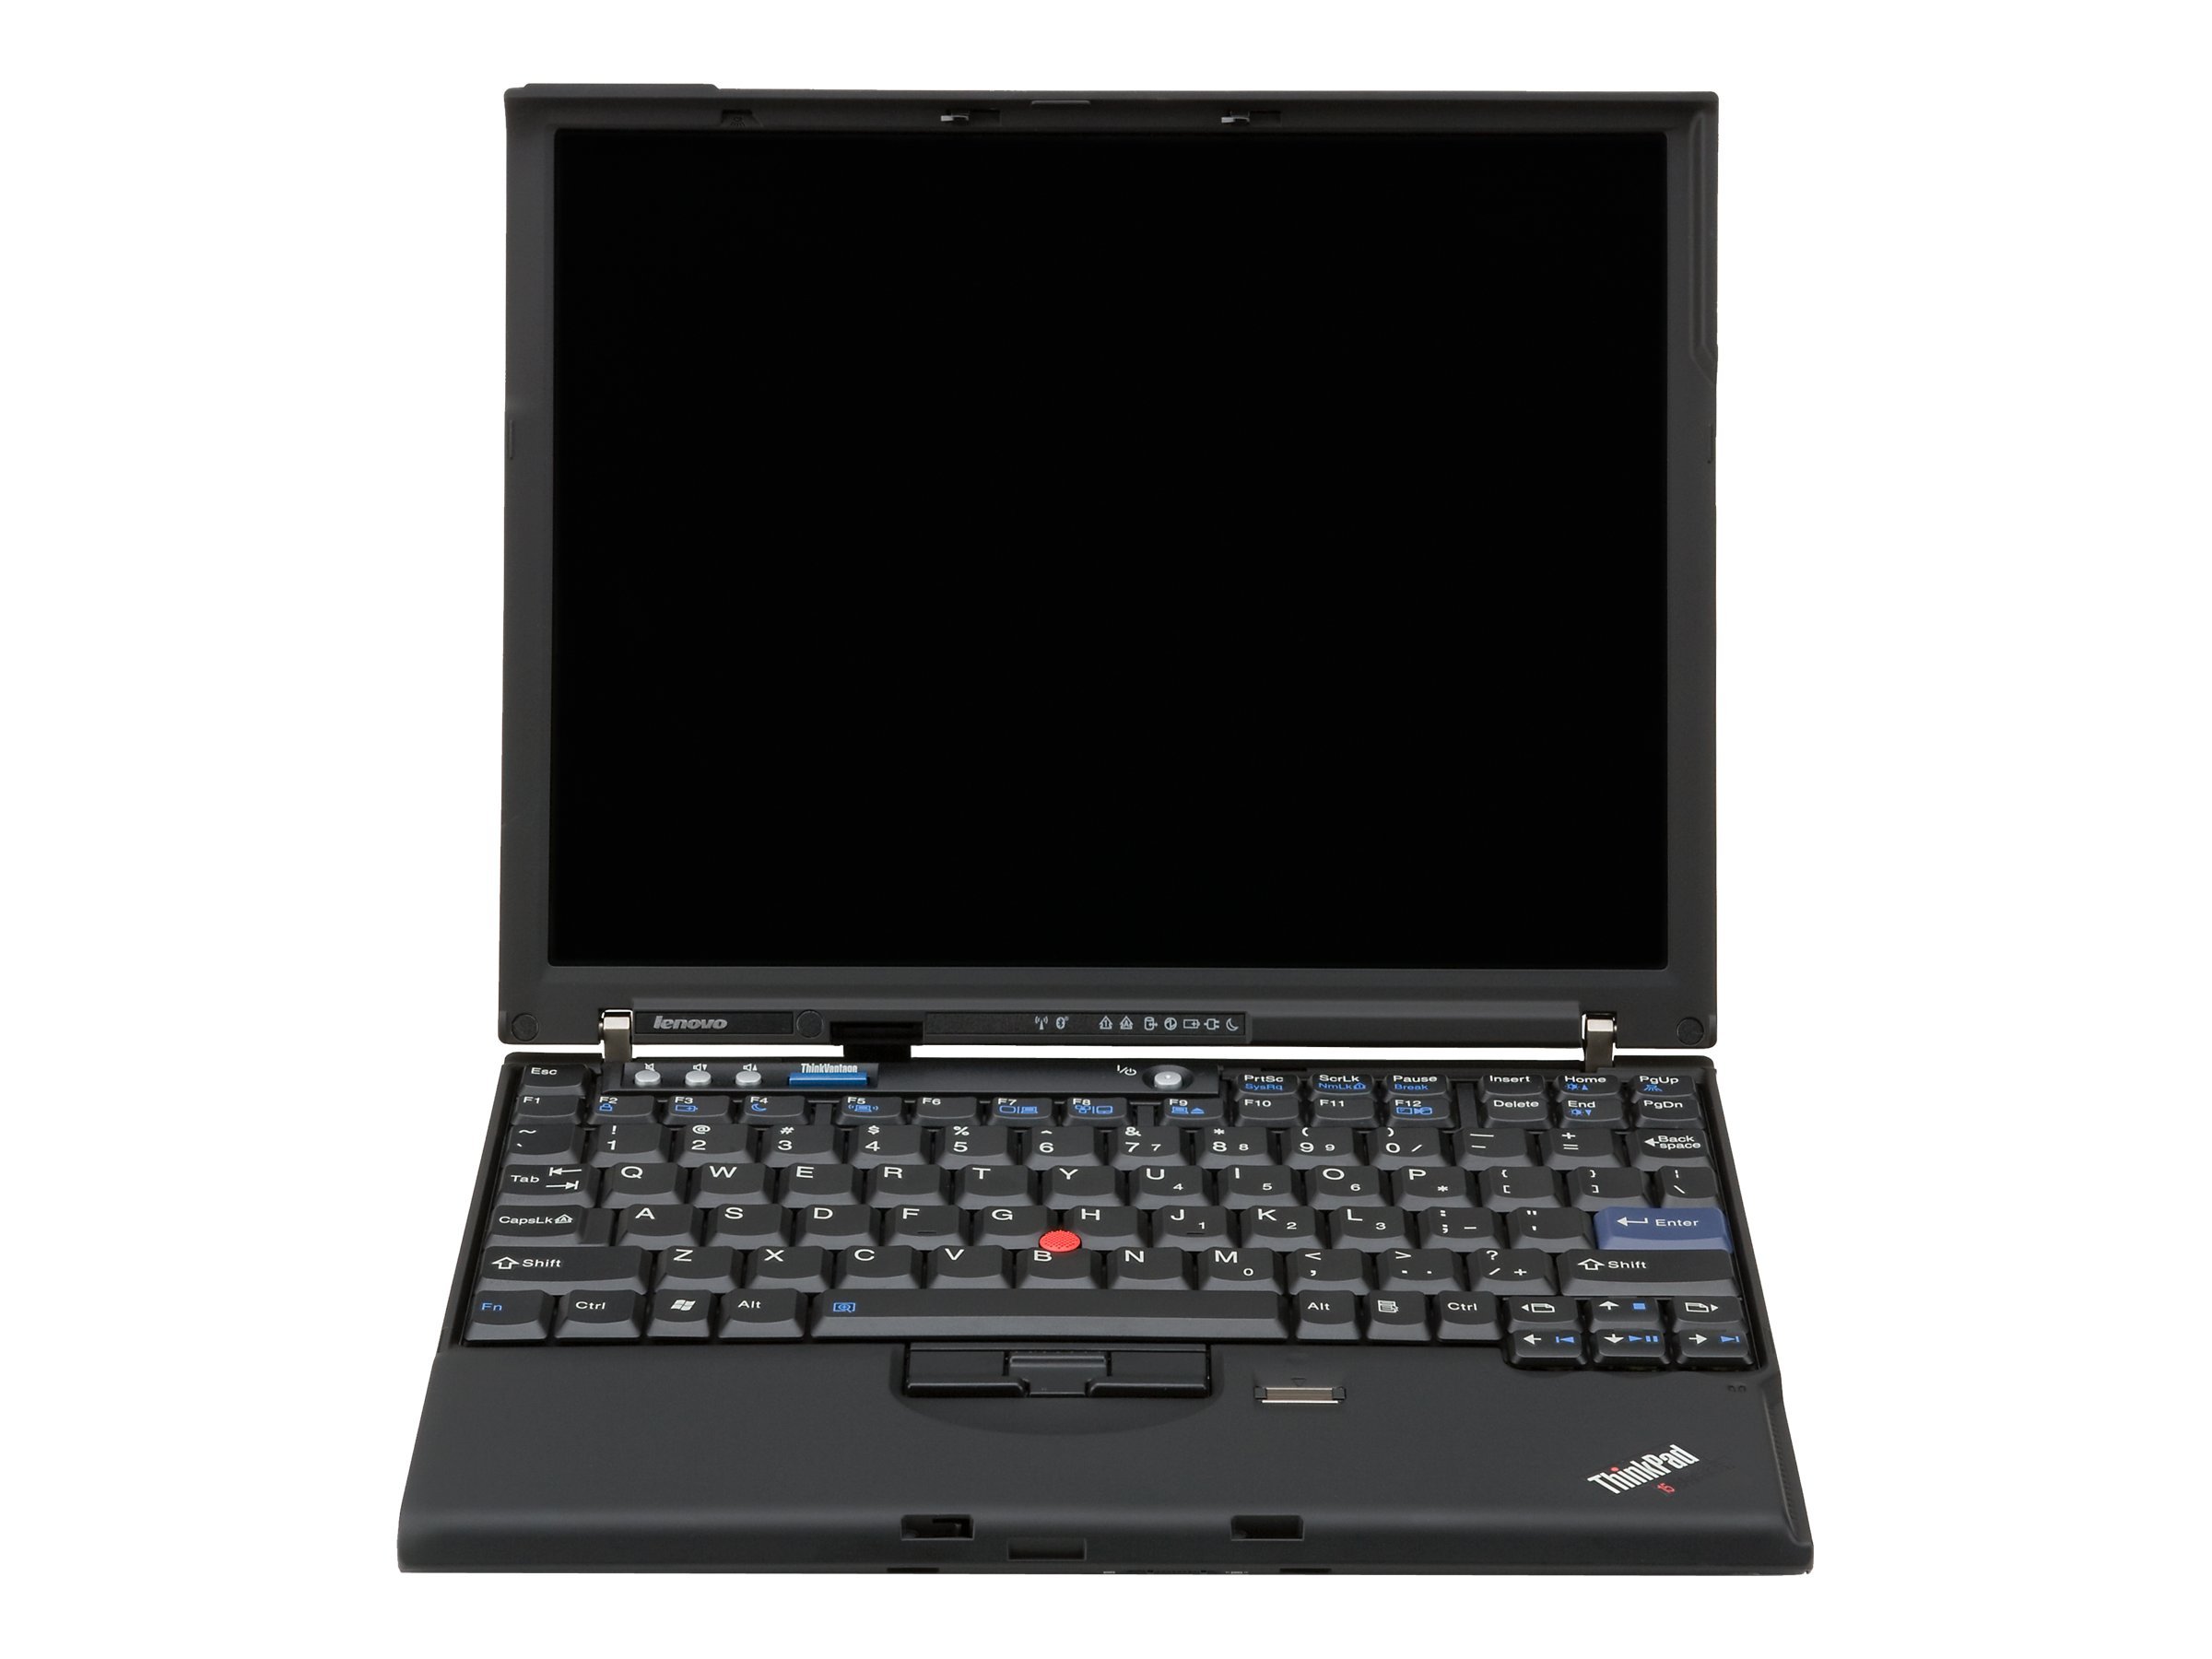 Lenovo ThinkPad X61s (7669)